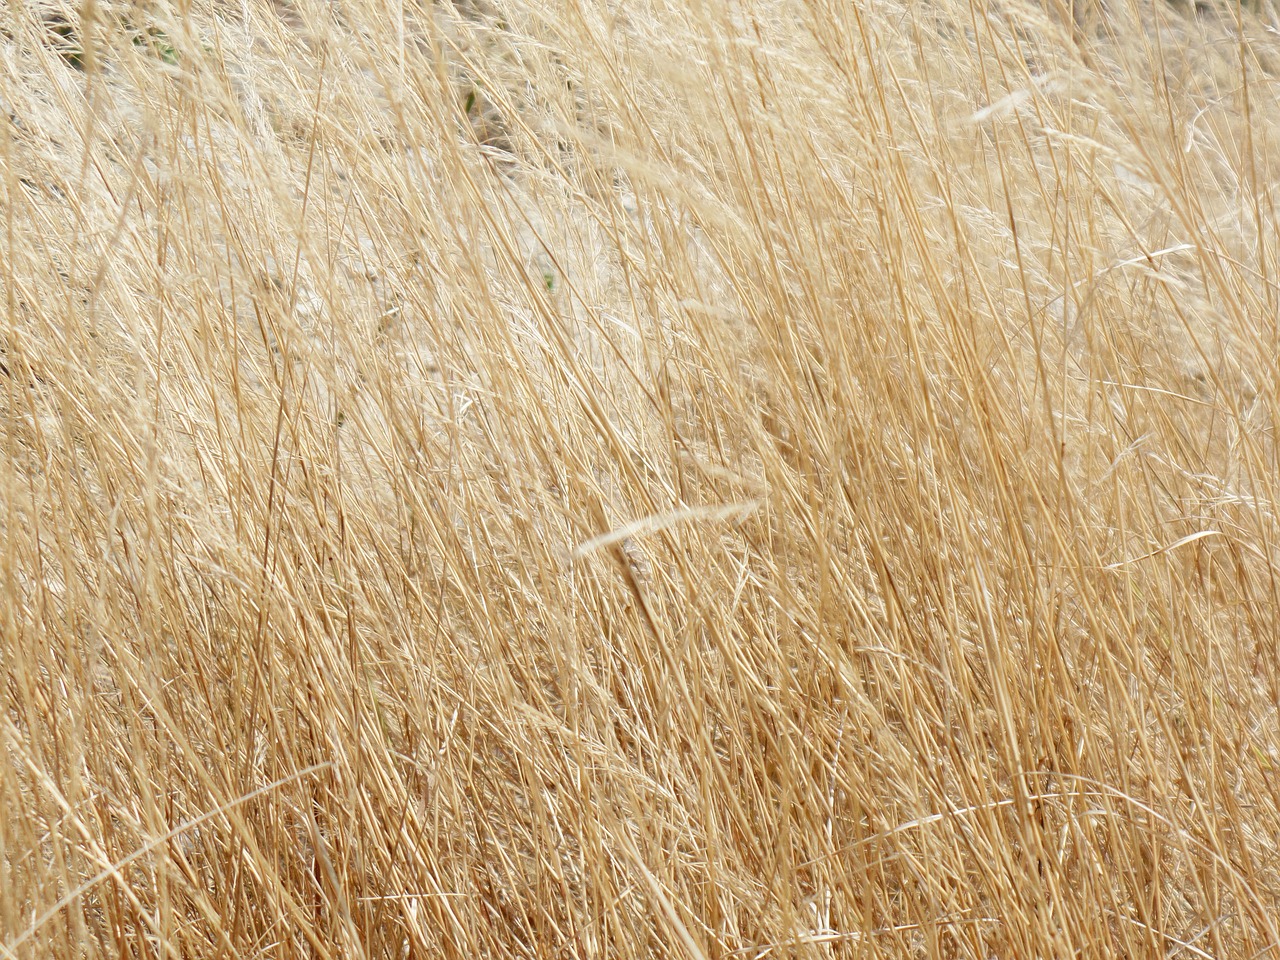 grass yellow dry free photo